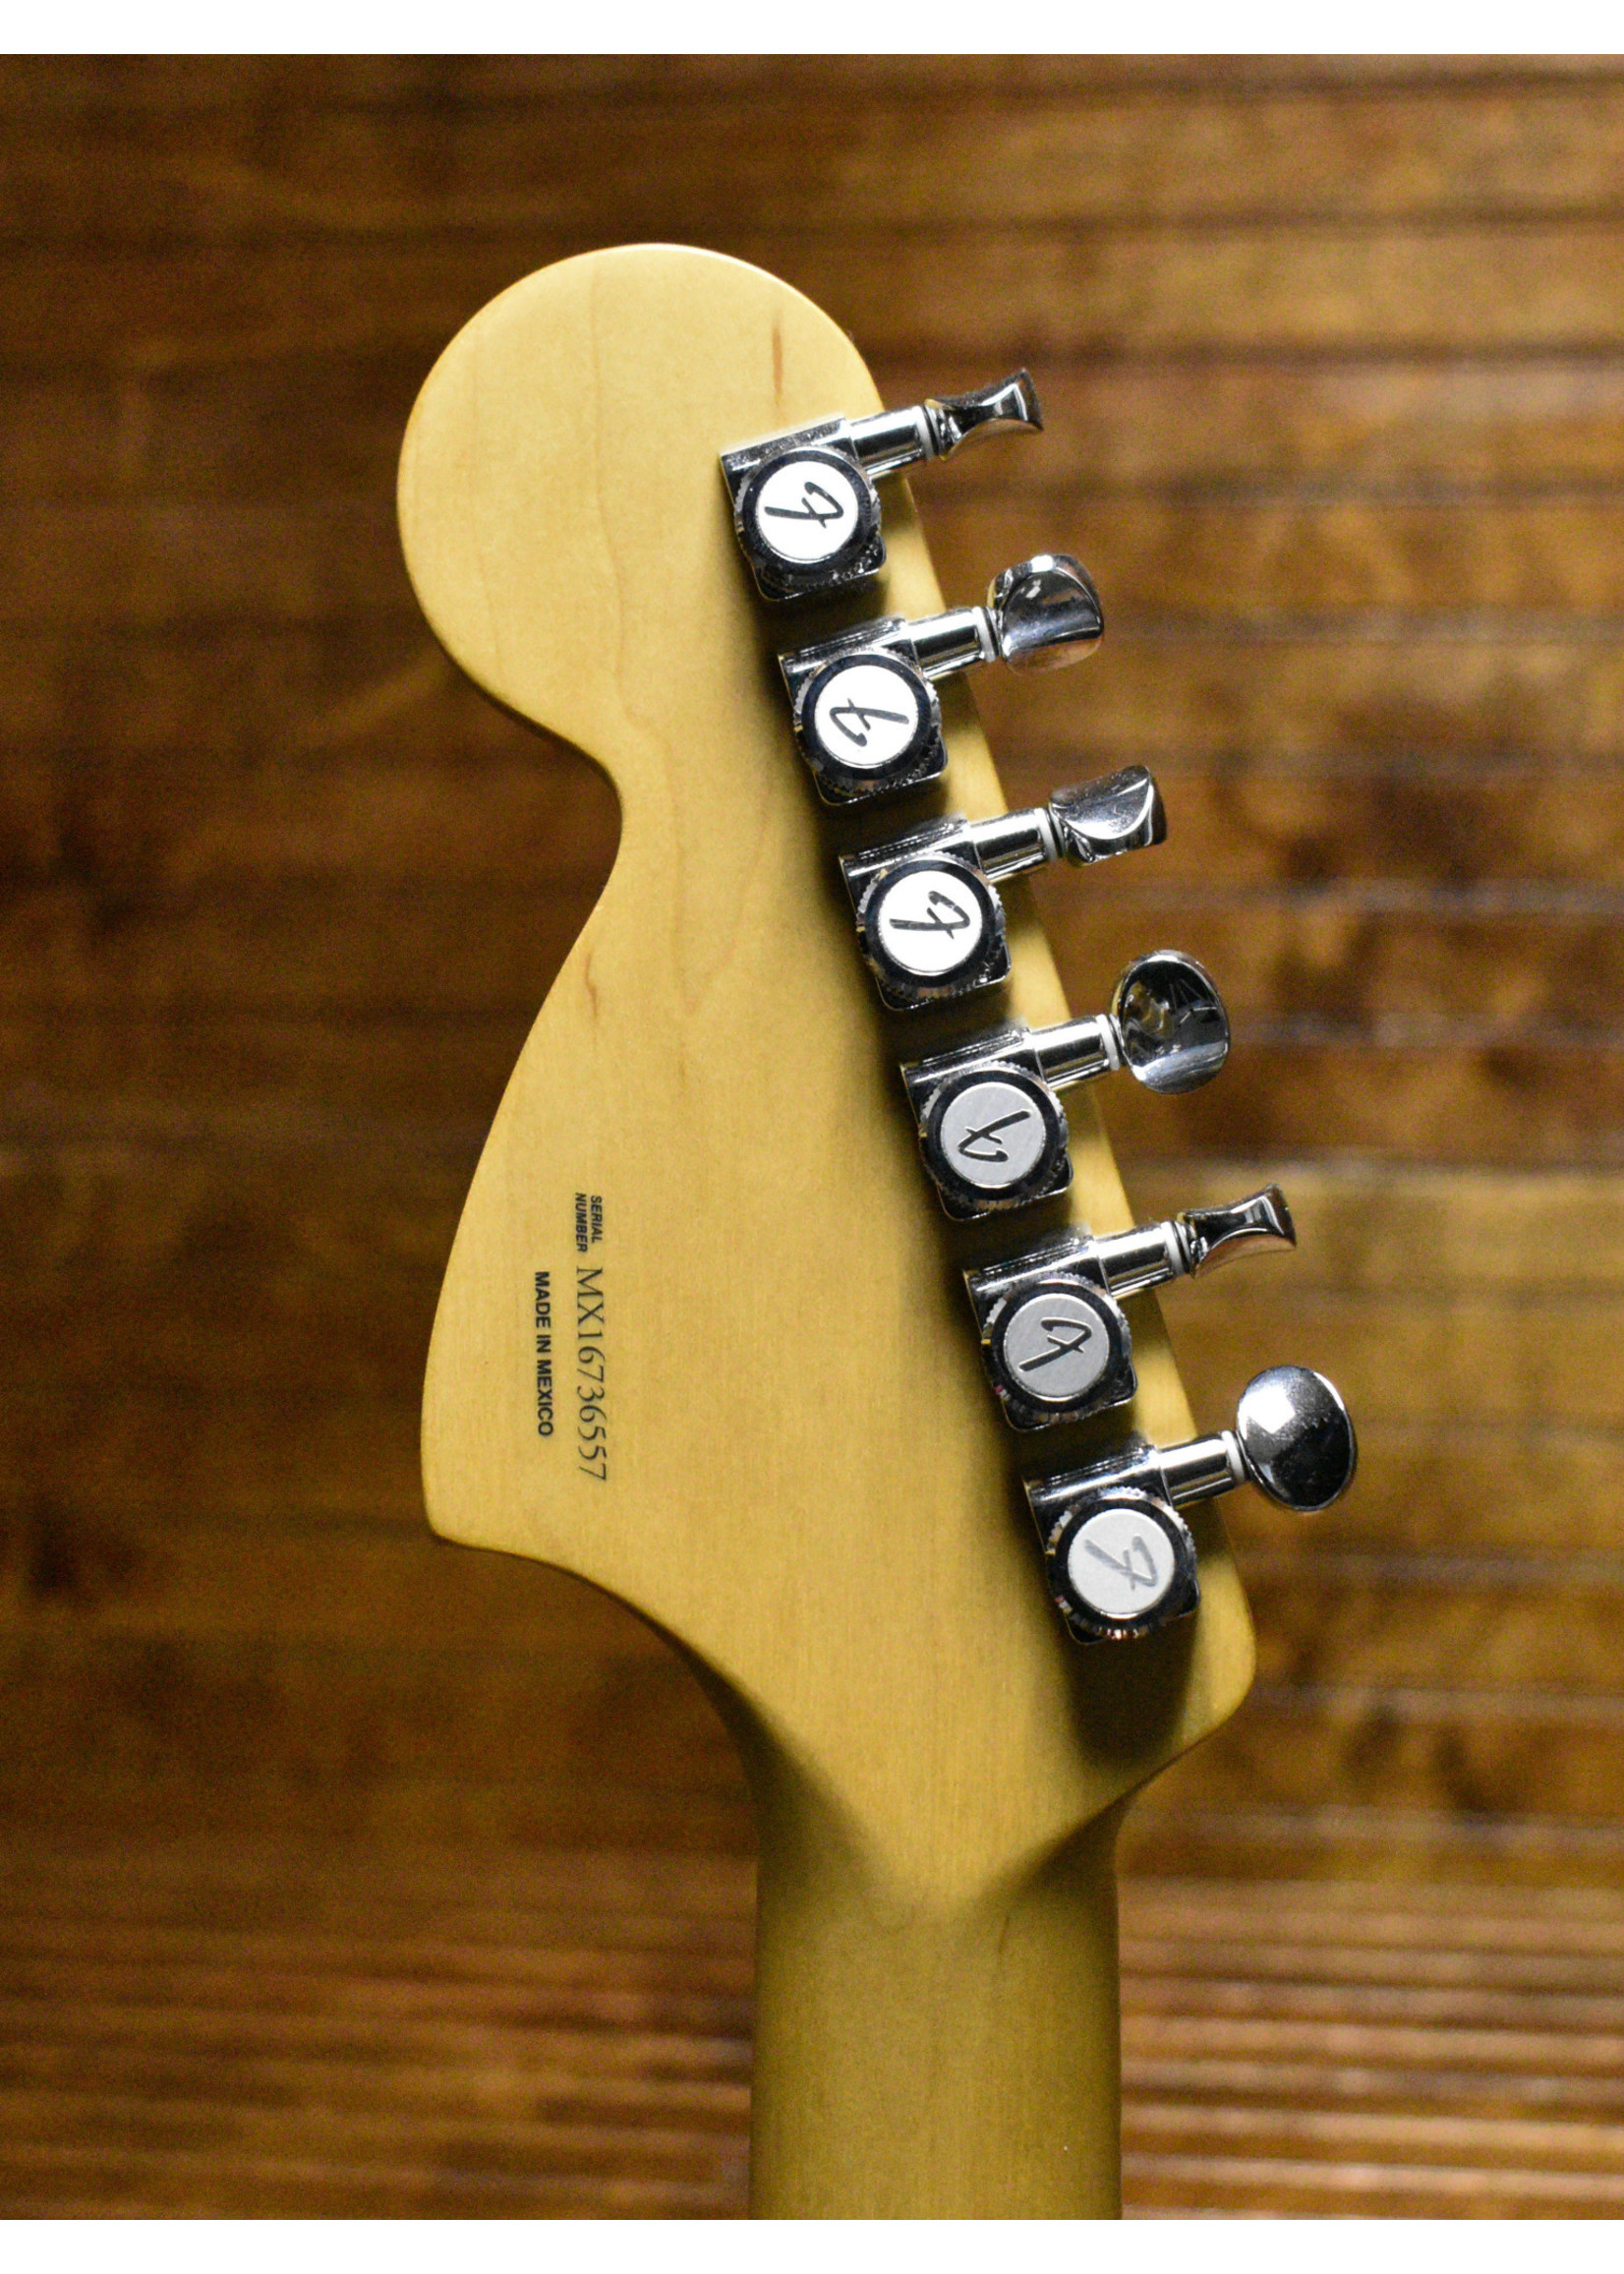 Fender Fender Deluxe Roadhouse Stratocaster Copper Mist